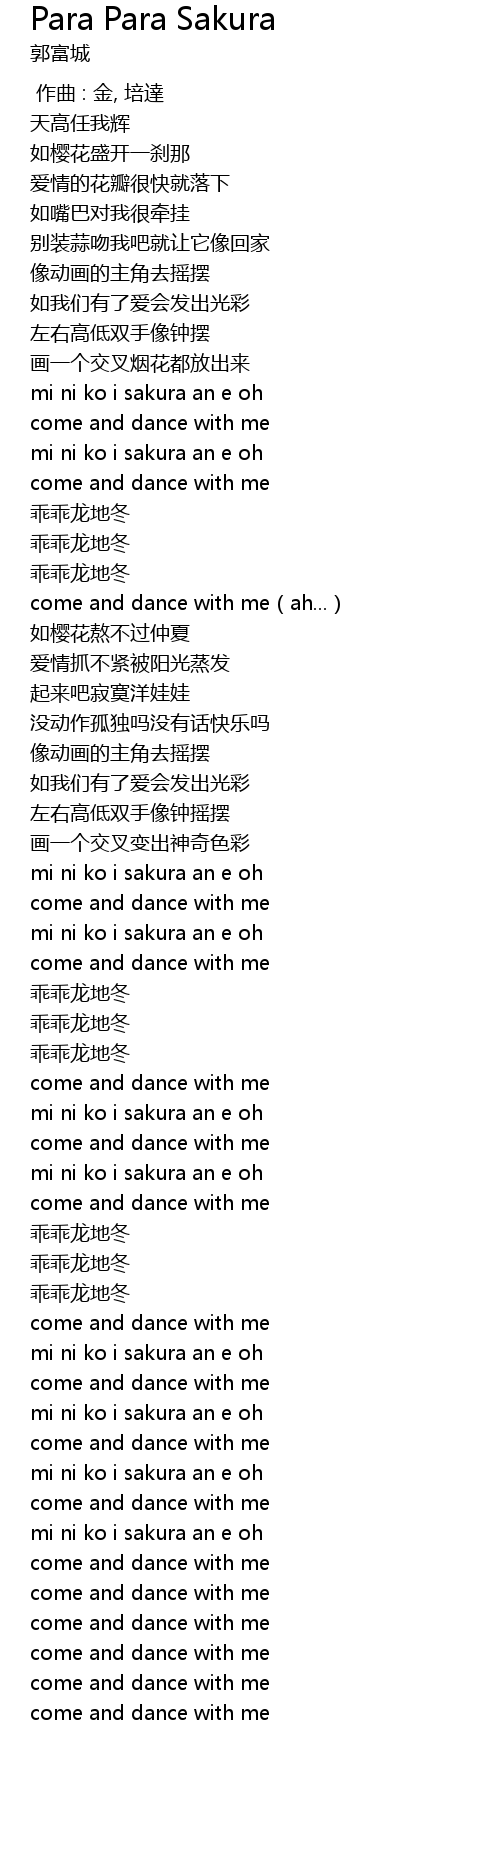 Para sakura lyrics para 郭富城